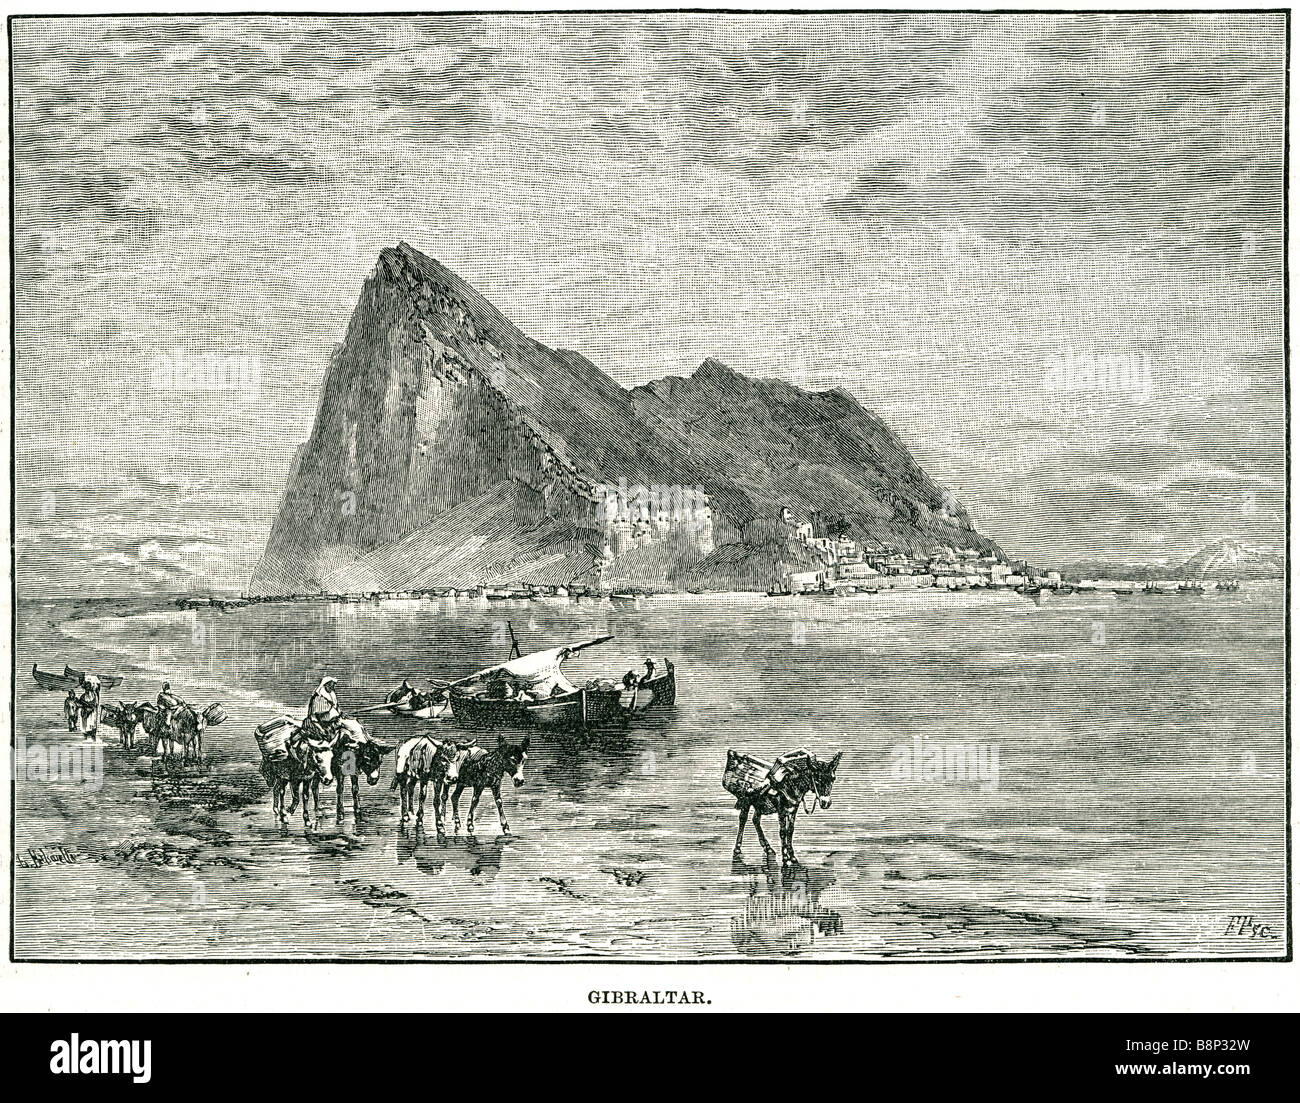 Gibilterra 1818 British Overseas territorio della penisola Iberica Forze Armate Foto Stock